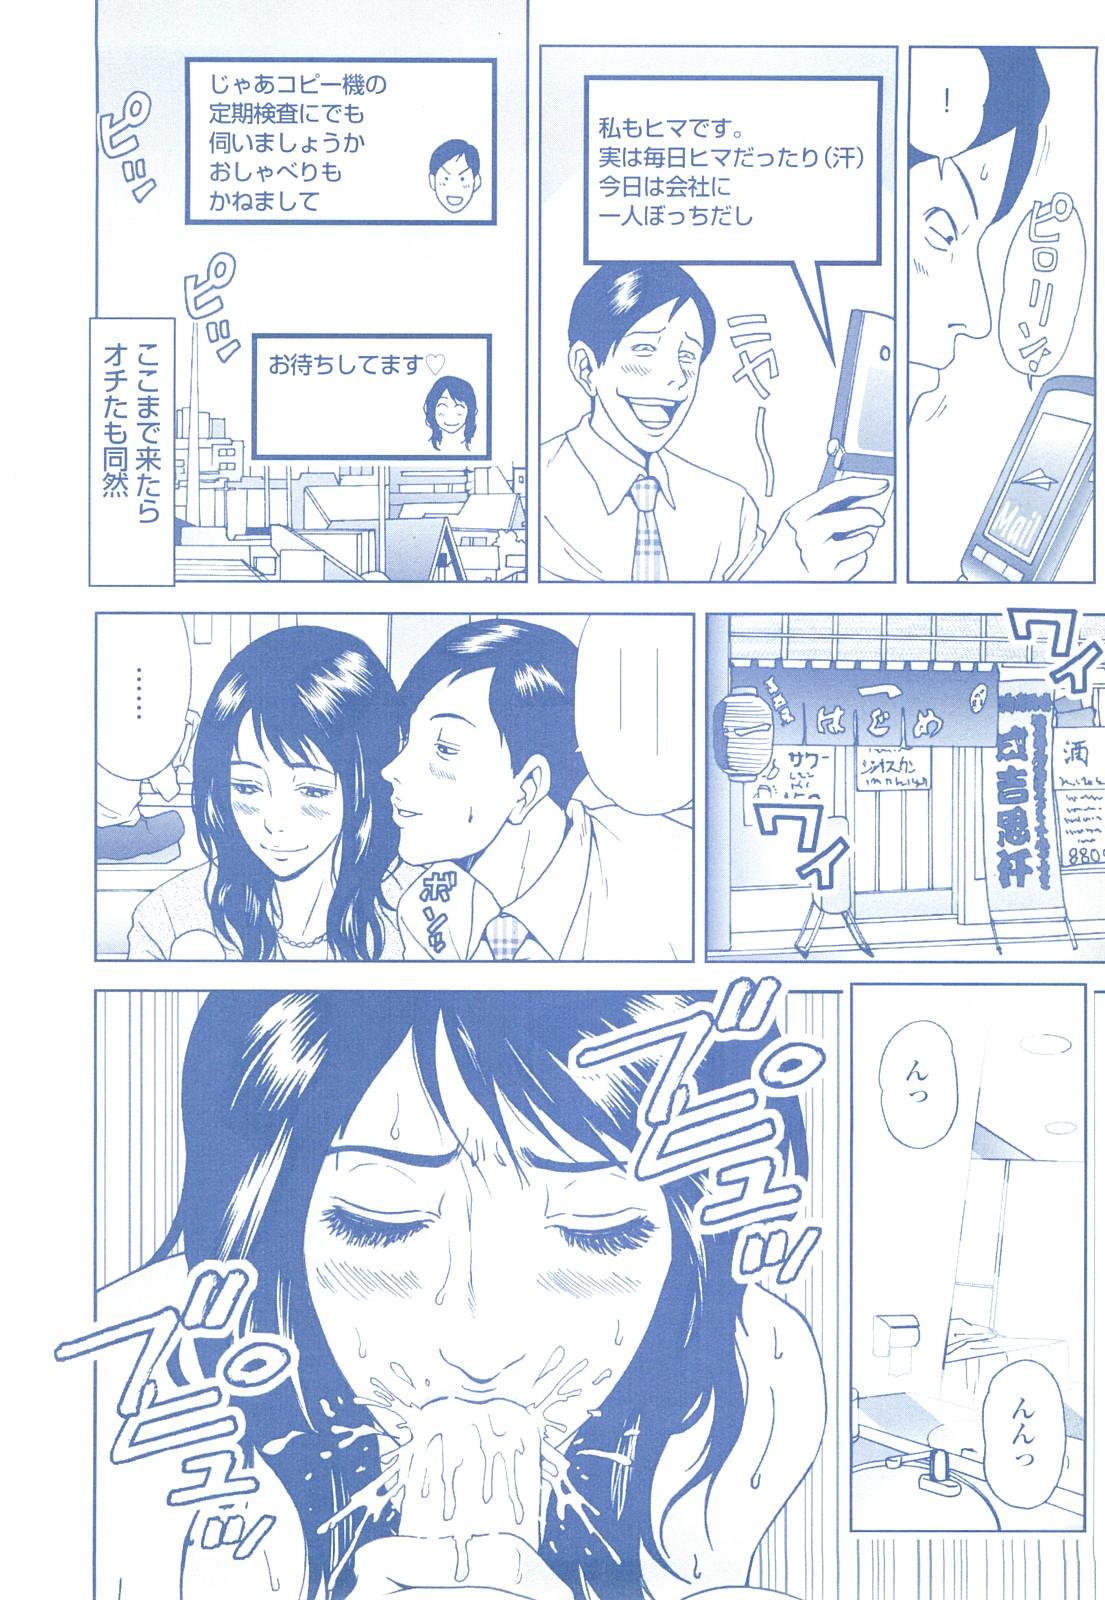 コミック裏モノJAPAN Vol.18 今井のりたつスペシャル号 233